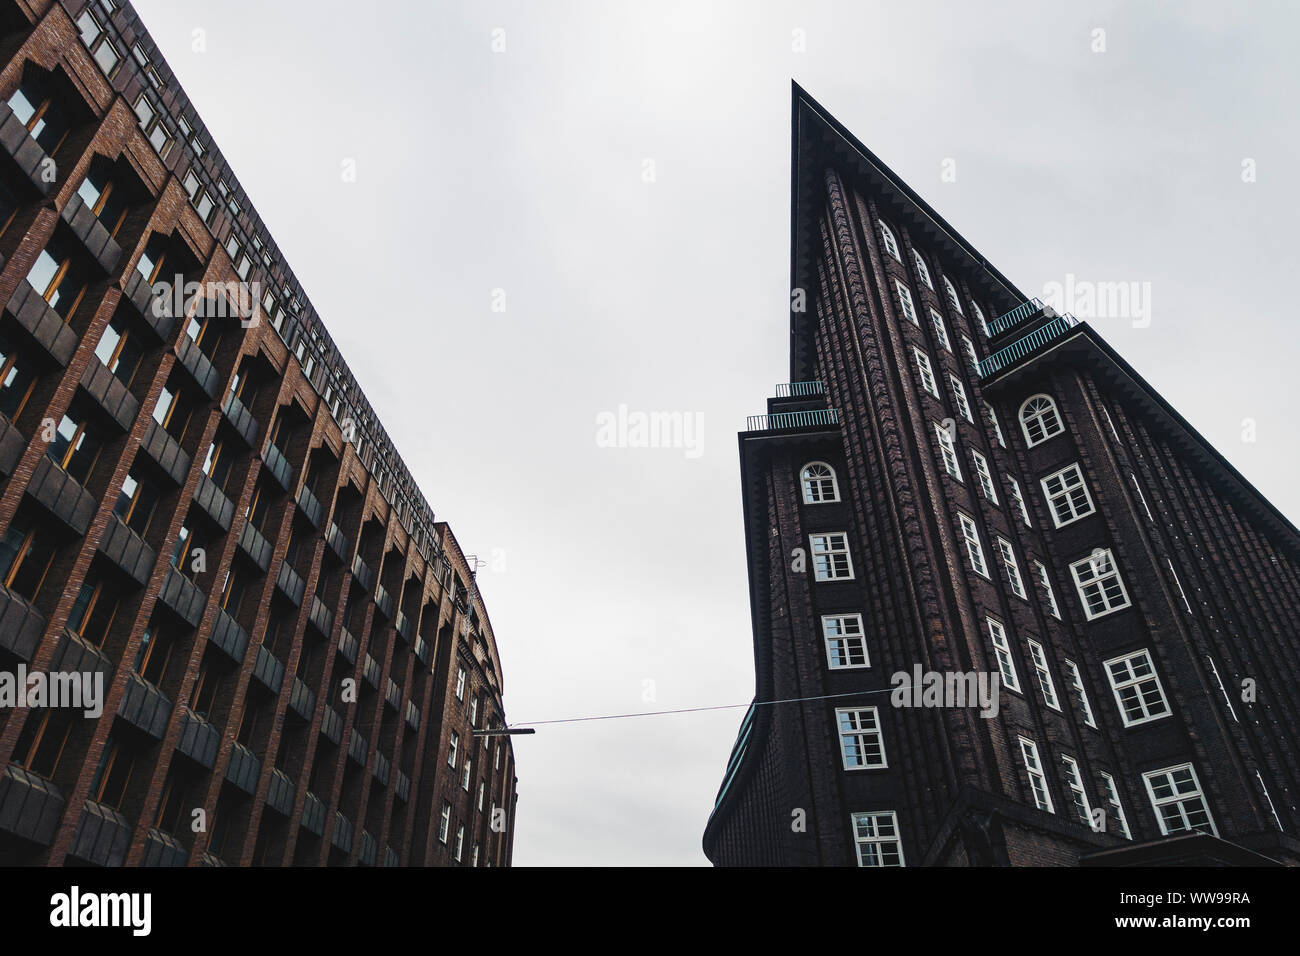 L'emblématique de l'expressionnisme de brique noire balayant conception de la Chilehaus (Chili) Maison à Hambourg. Conçu par l'architecte Fritz Höger et achevé en 1924 Banque D'Images